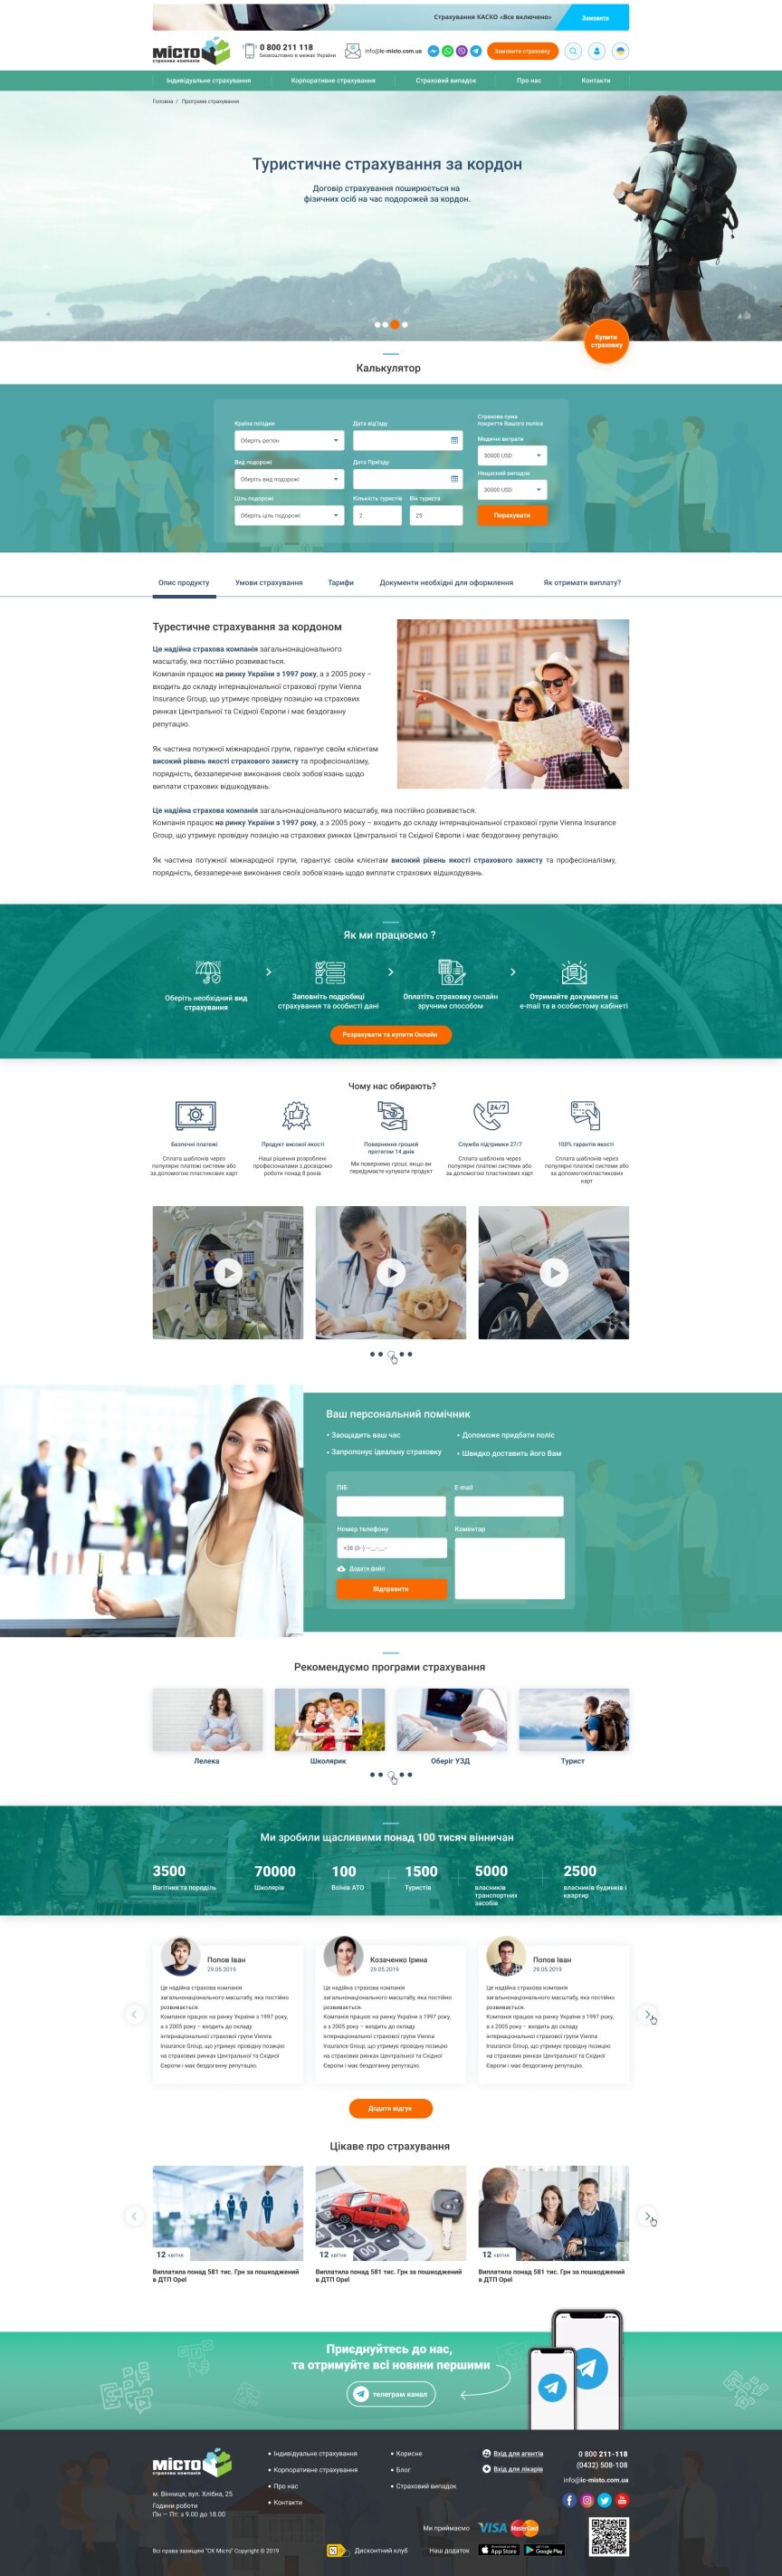 дизайн внутрішніх сторінкок на тему Бізнес і компанії — Сайт страхової компанії "Місто" 41